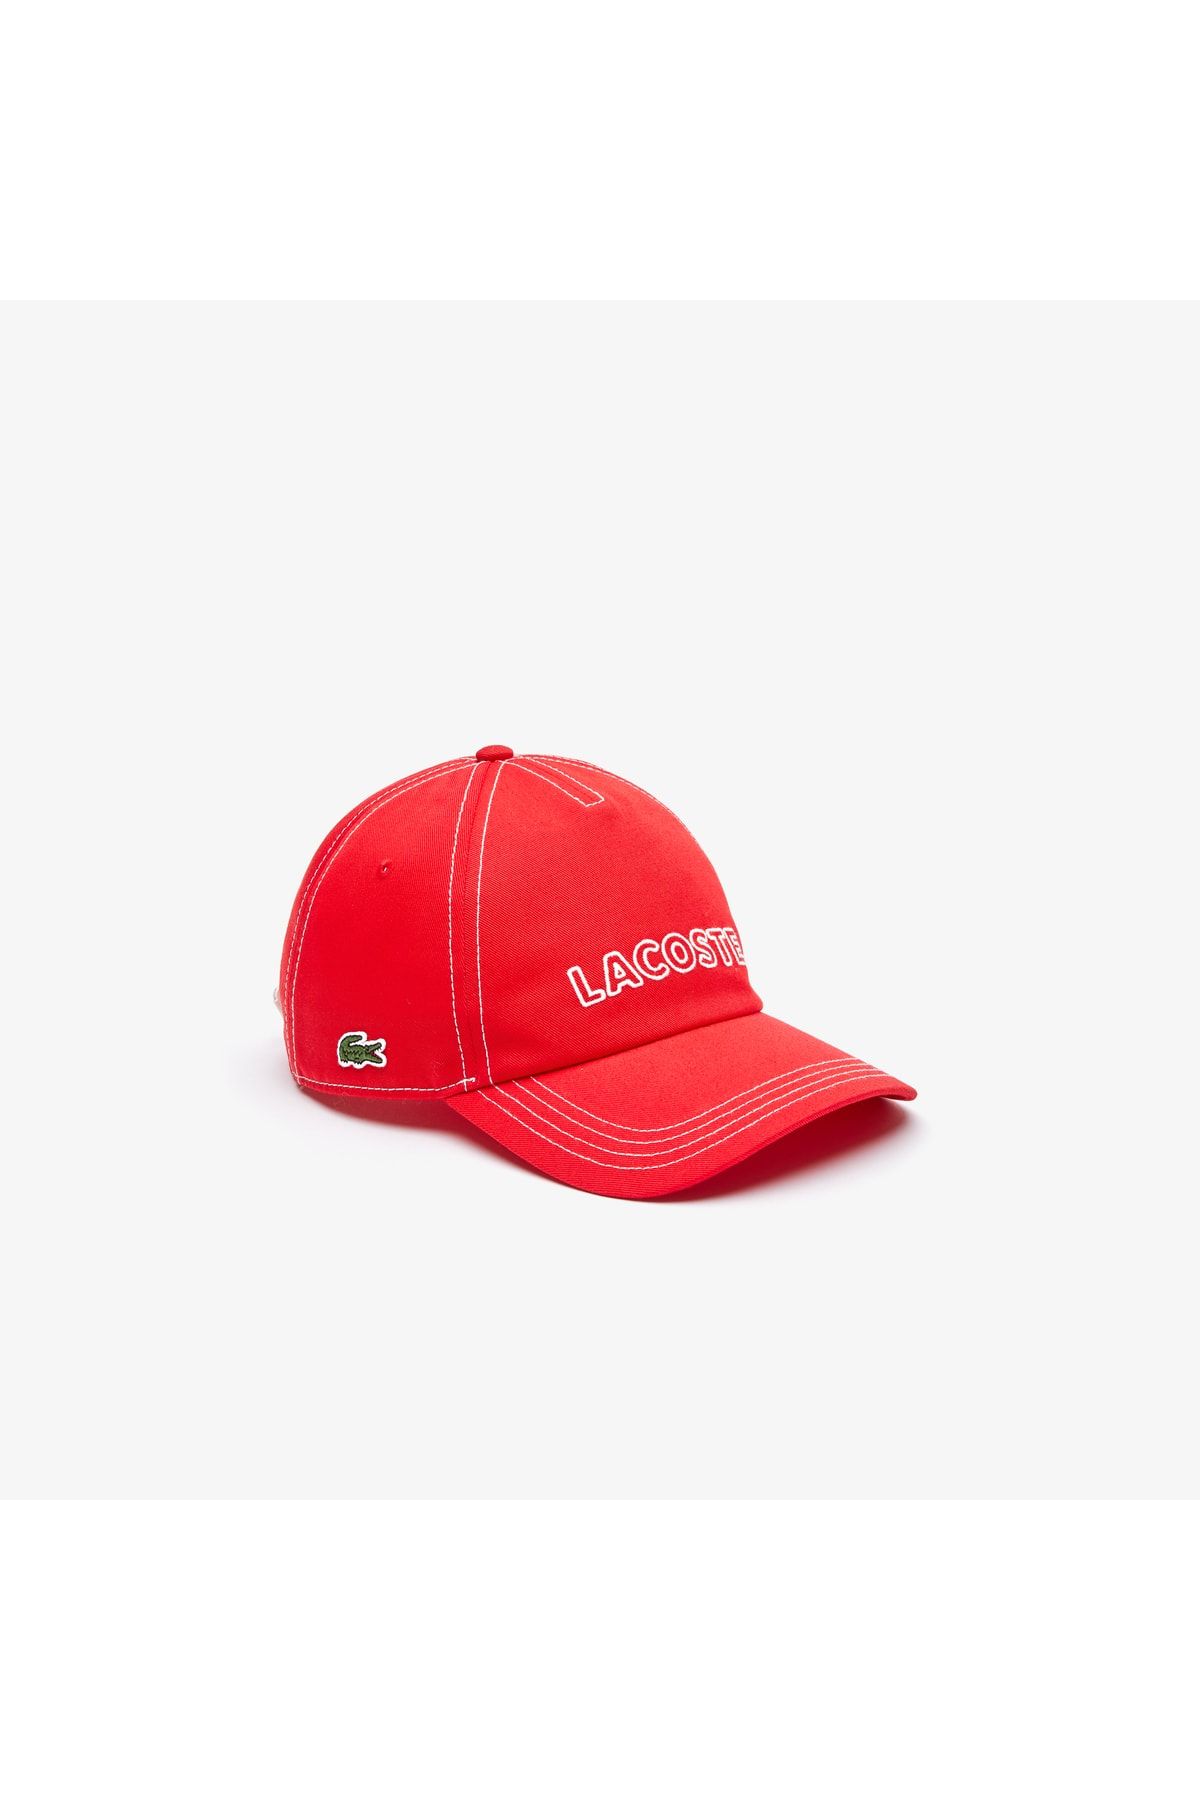 Lacoste Erkek Baskılı Kırmızı Şapka RK2243